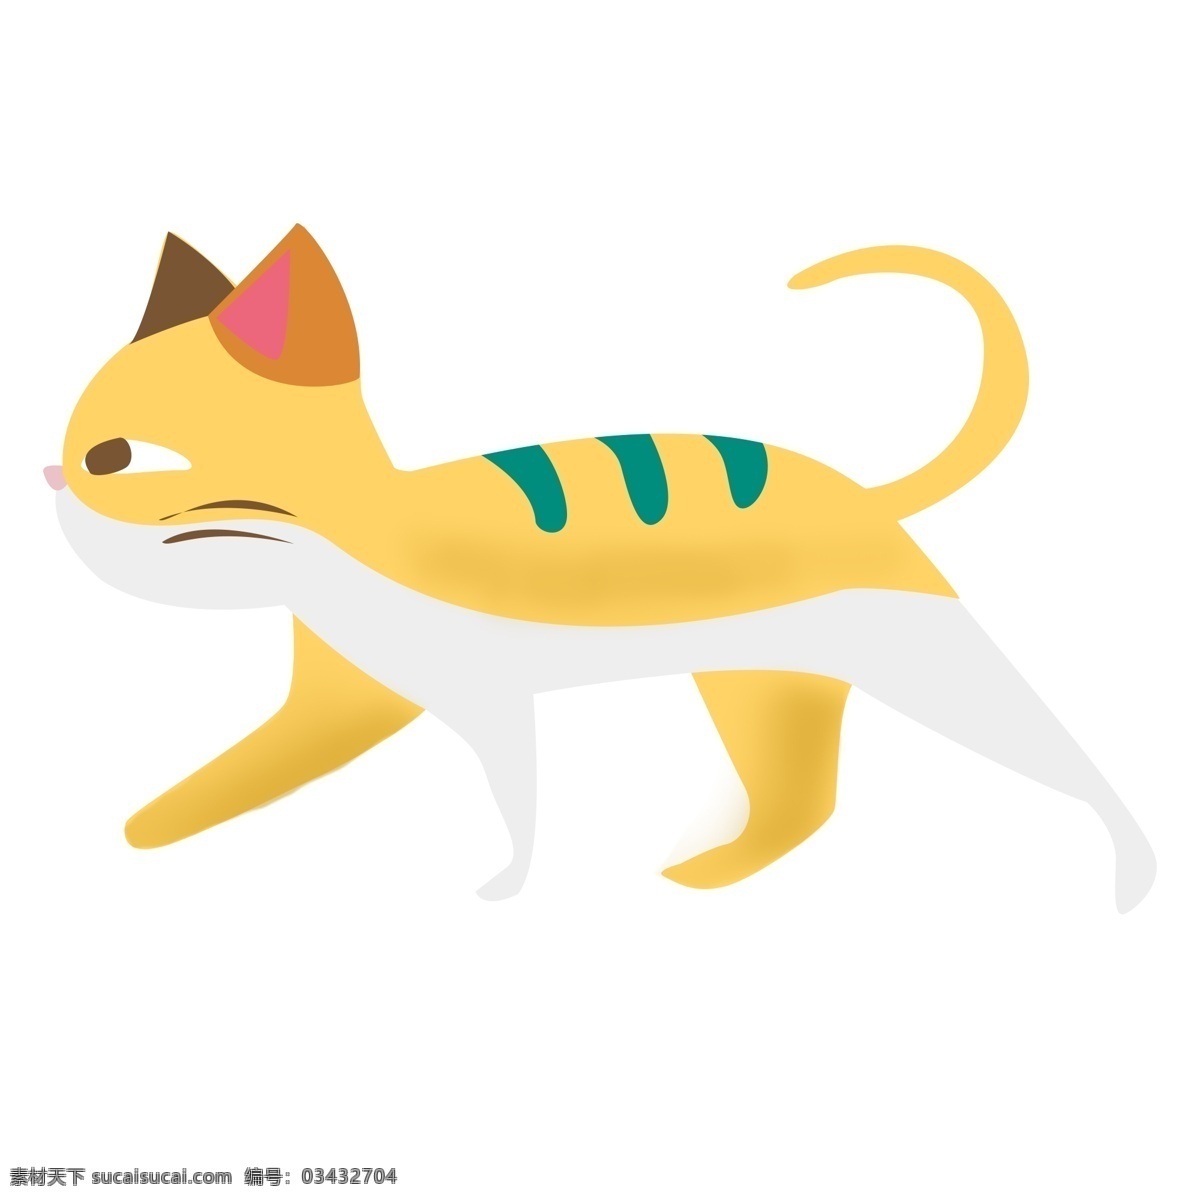 可爱 黄色 猫咪 装饰 元素 装饰元素 手绘 动物 橘猫 宠物 萌宠